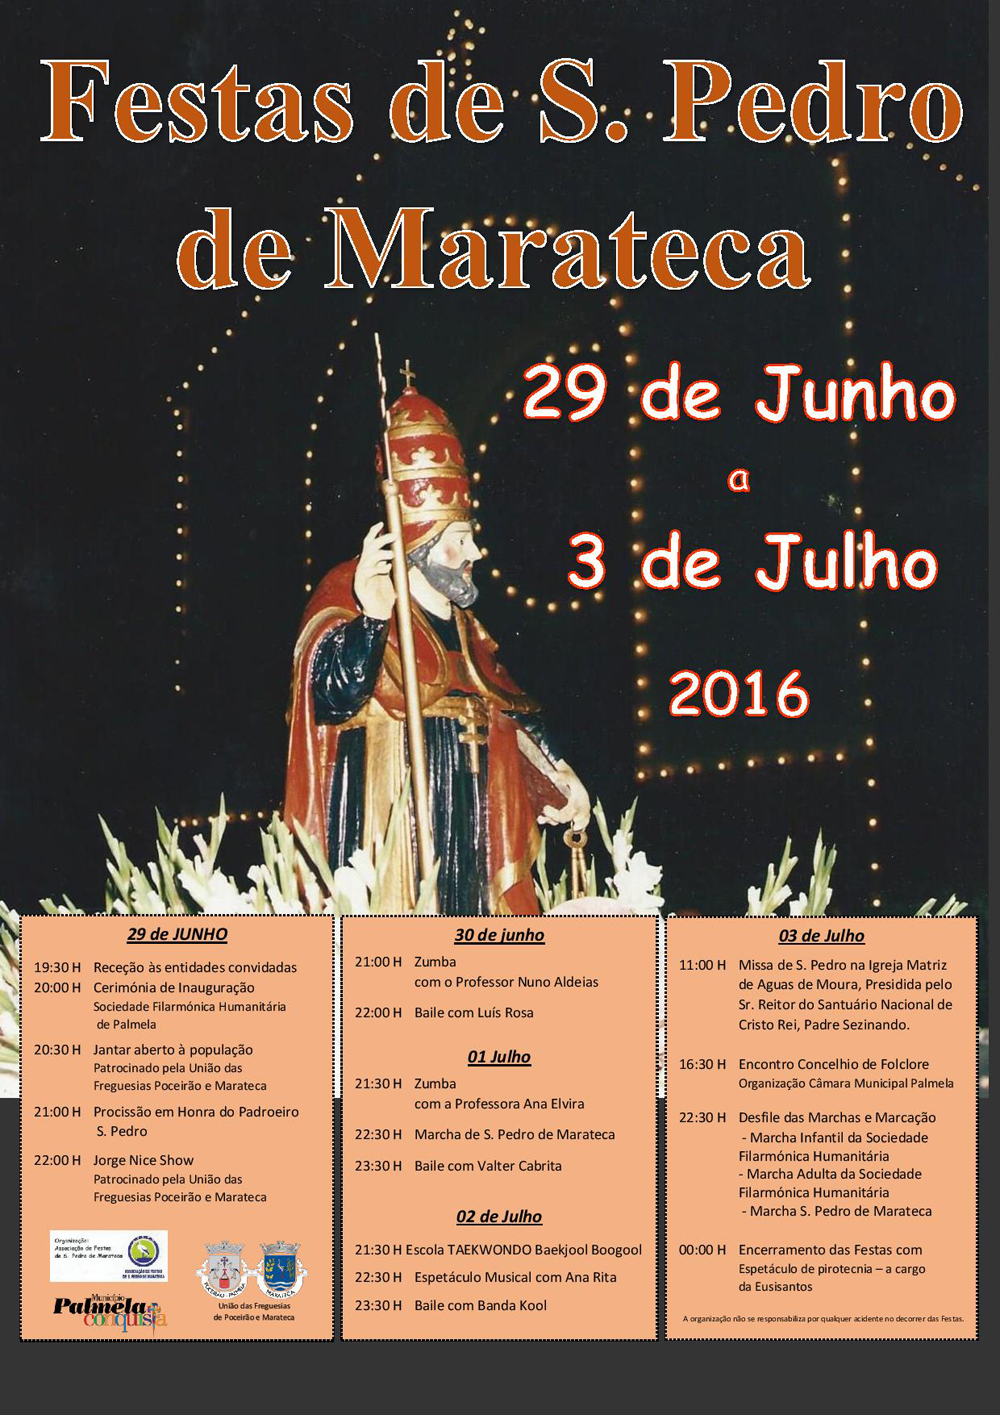 Festas de S. Pedro continuam a preservar identidade cultural da Marateca